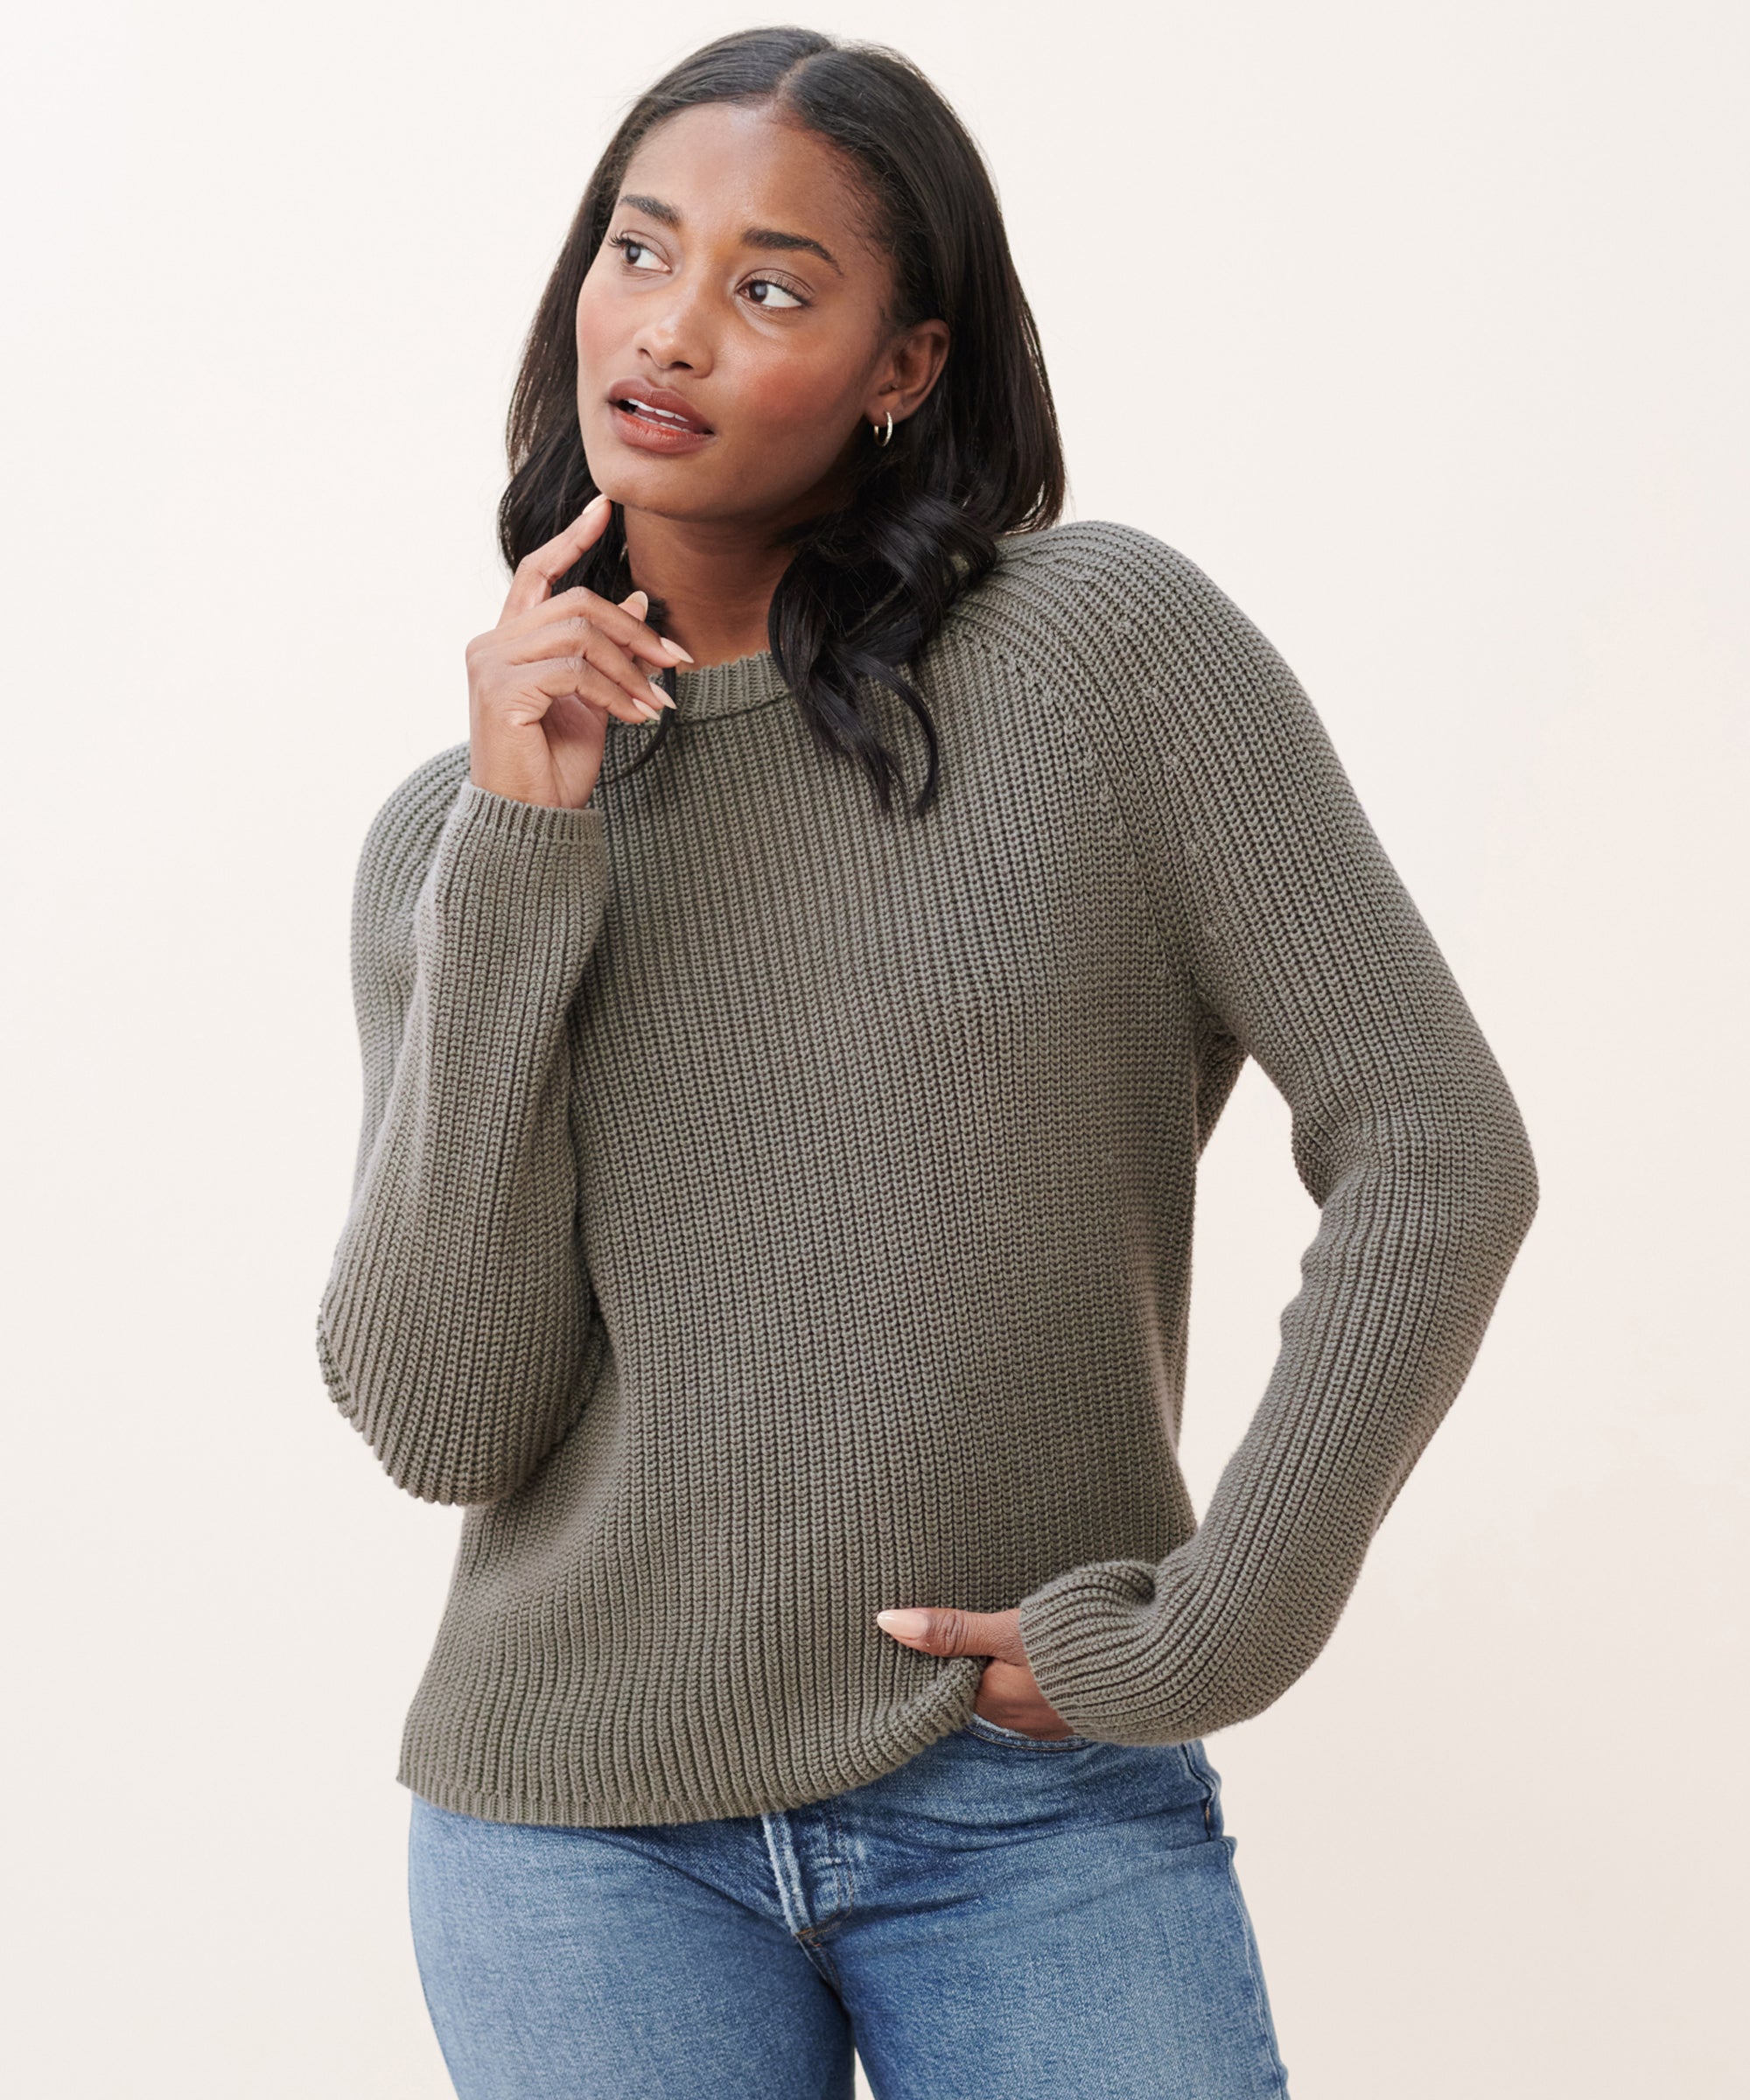 Jenni Kayne Kids' Cotton Fisherman Sweater Size 4-5